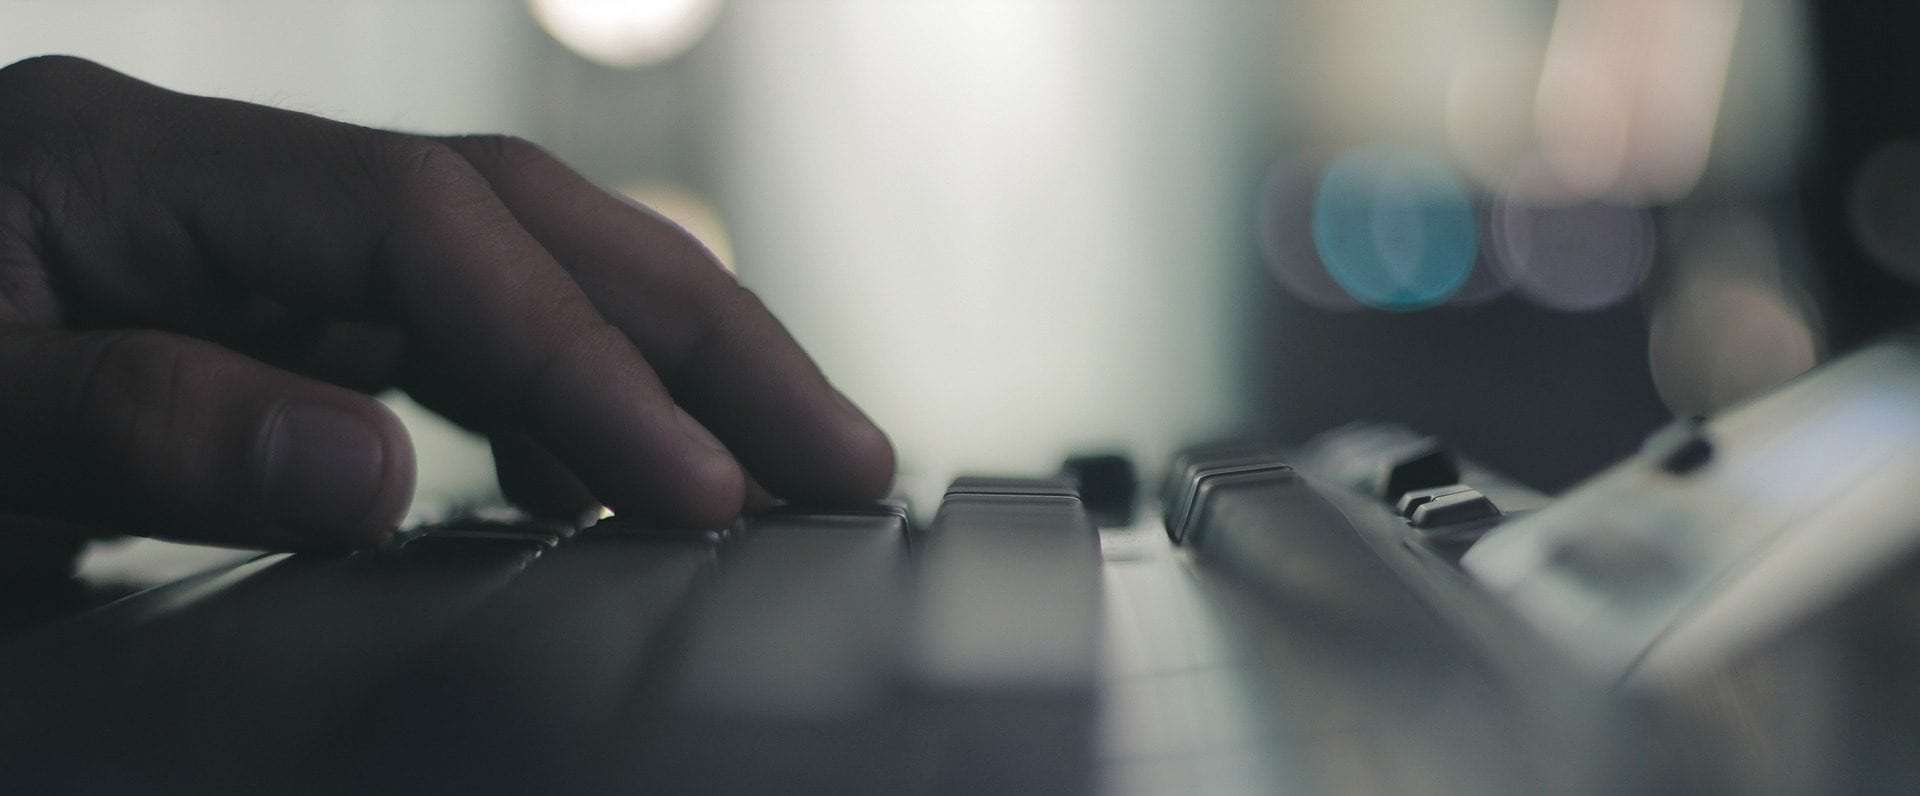 fingers on a keyboard